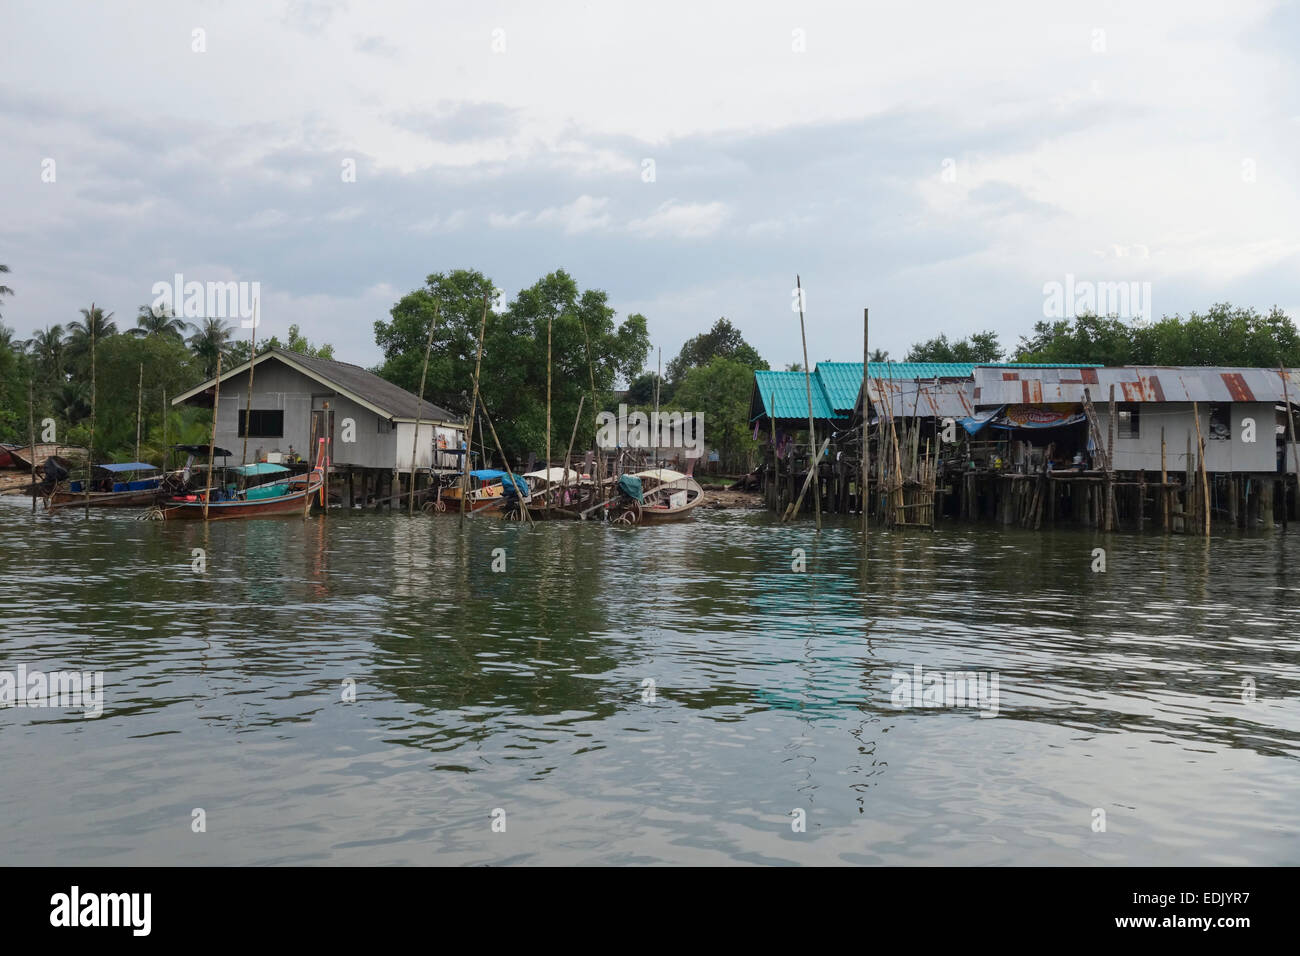 Fluss Häuser auf Stelzen, mit Longtail-Booten, Mangrovenwald, Krabi River, Thailand, Südostasien. Stockfoto